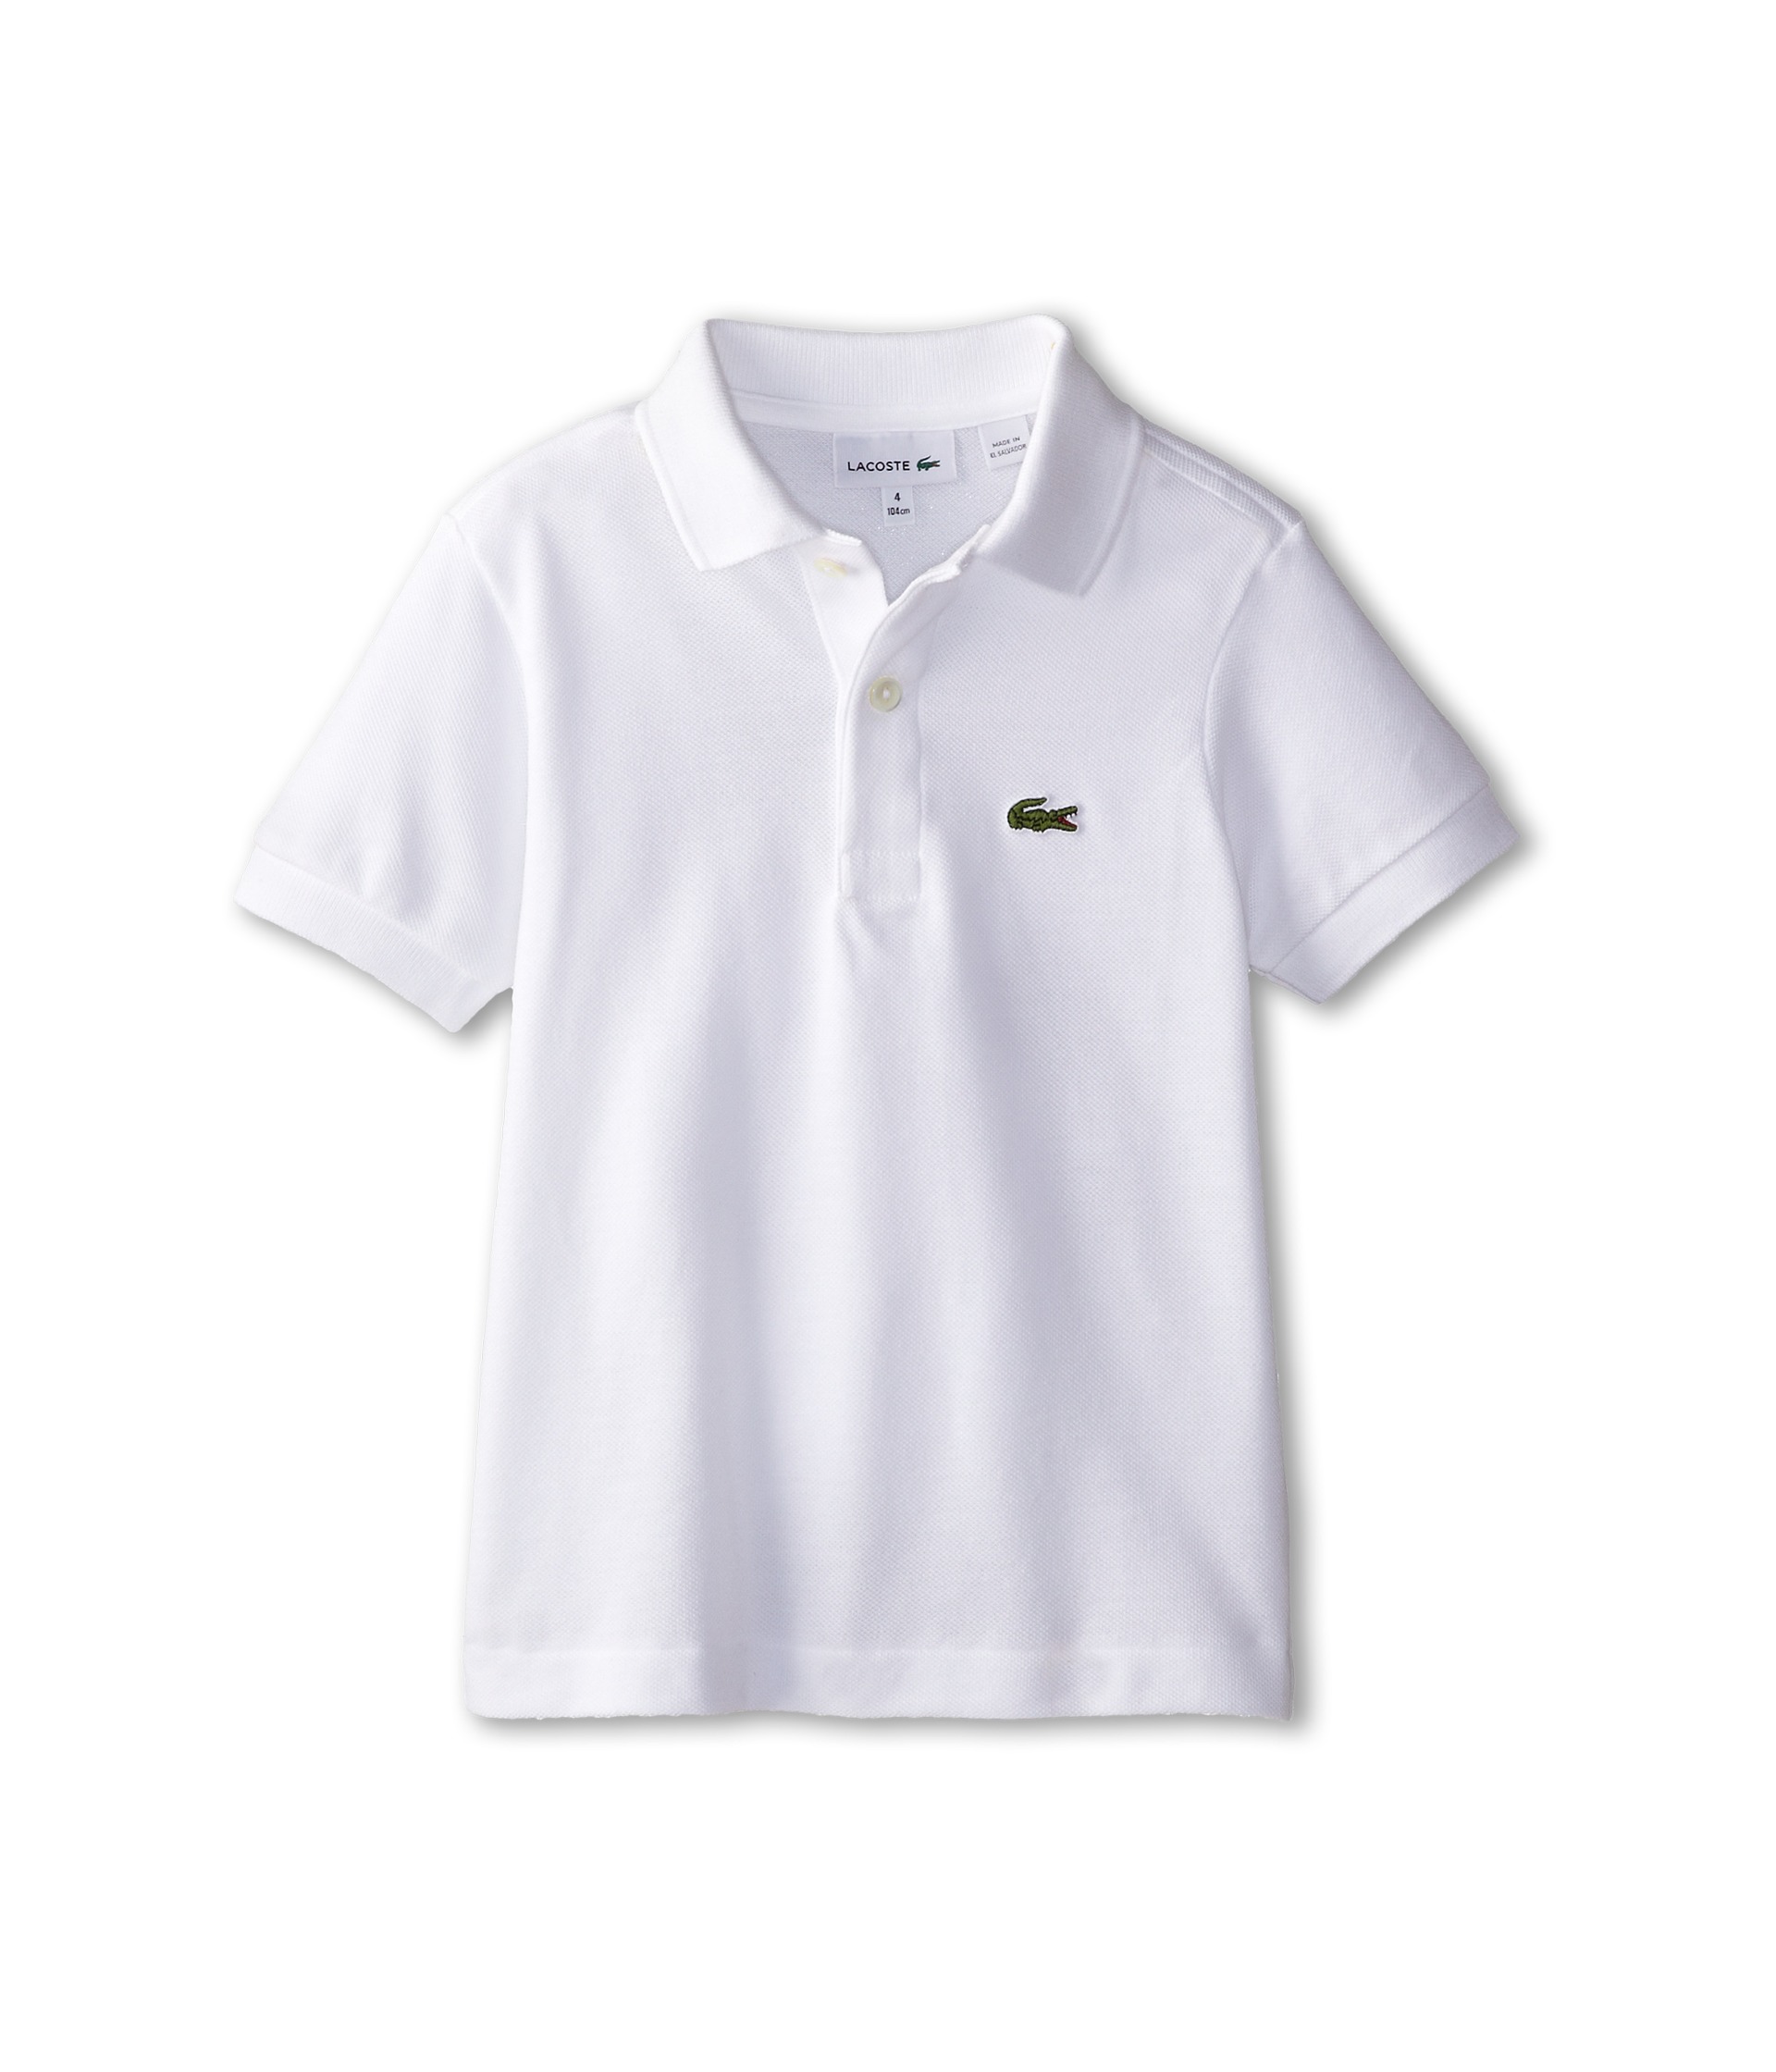   Short Sleeve Classic Pique Polo Shirt (Toddler/Little Kids/Big Kids